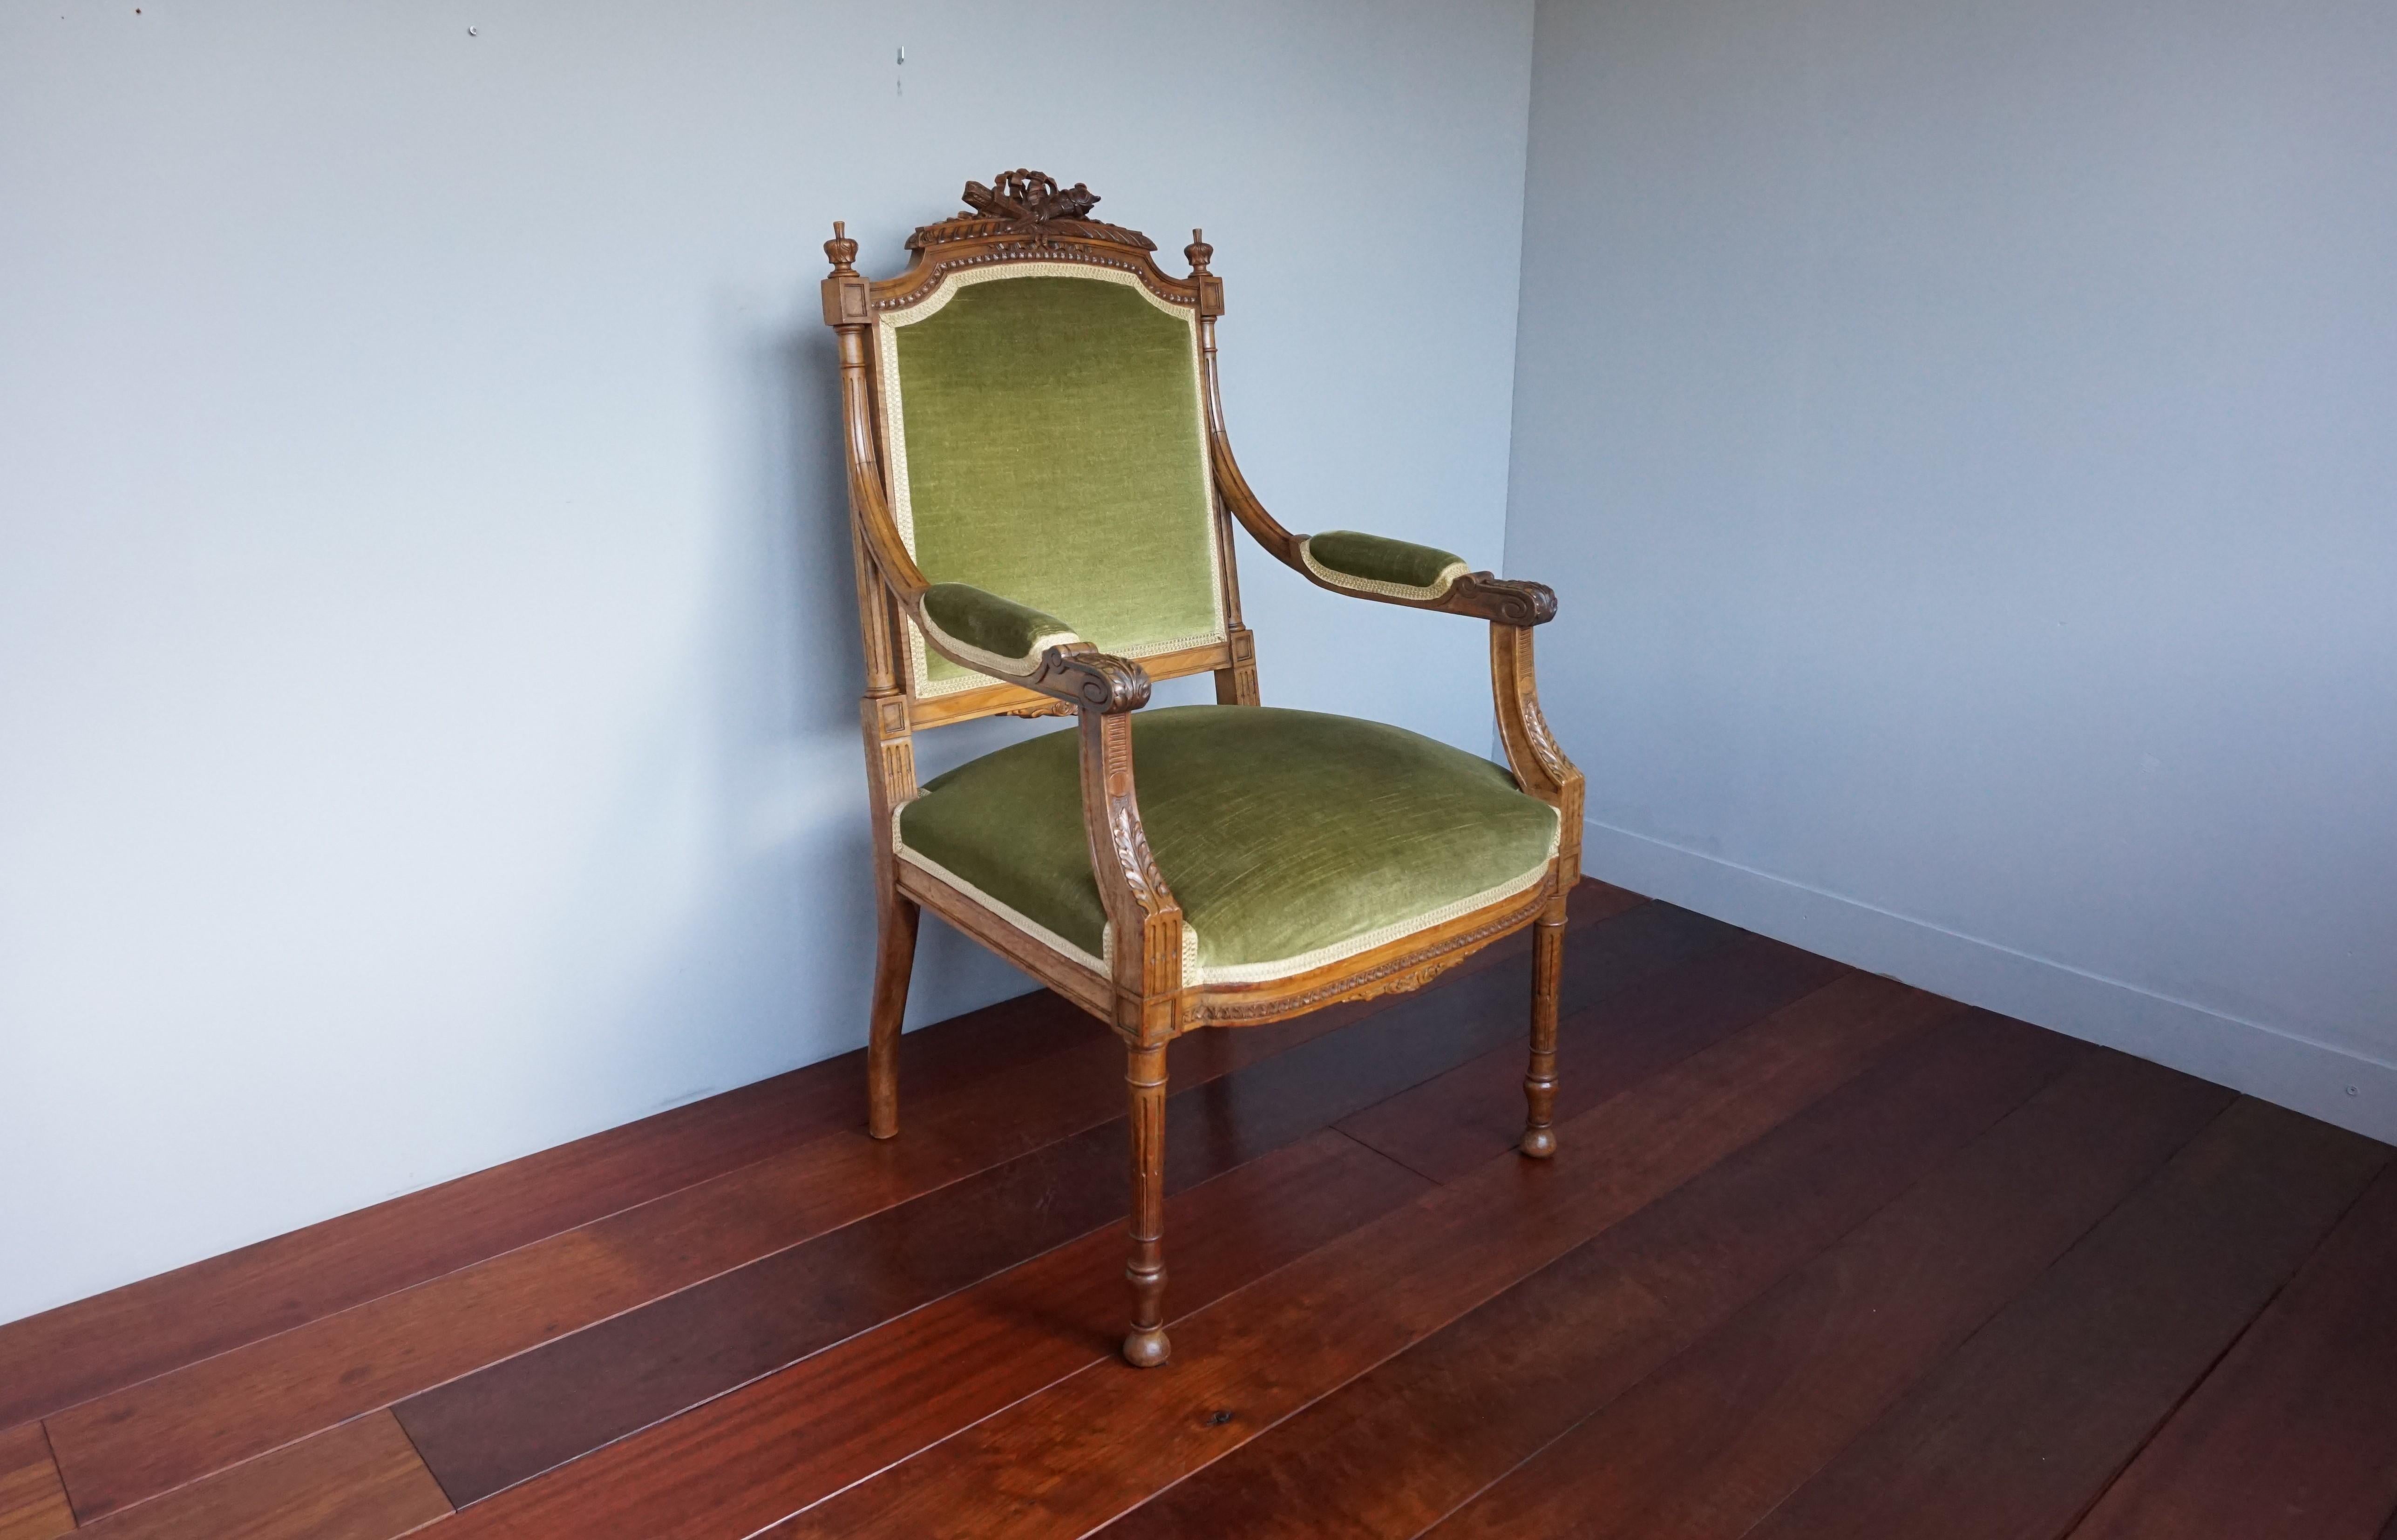 Stilvoller und sehr bequemer antiker Stuhl mit perfekter Polsterung.

Wenn Sie auf der Suche nach einem unglaublich gut gearbeiteten antiken Stuhl sind, um Ihren Wohnraum zu verschönern, dann könnte dieses auffällige Exemplar perfekt für Sie sein.